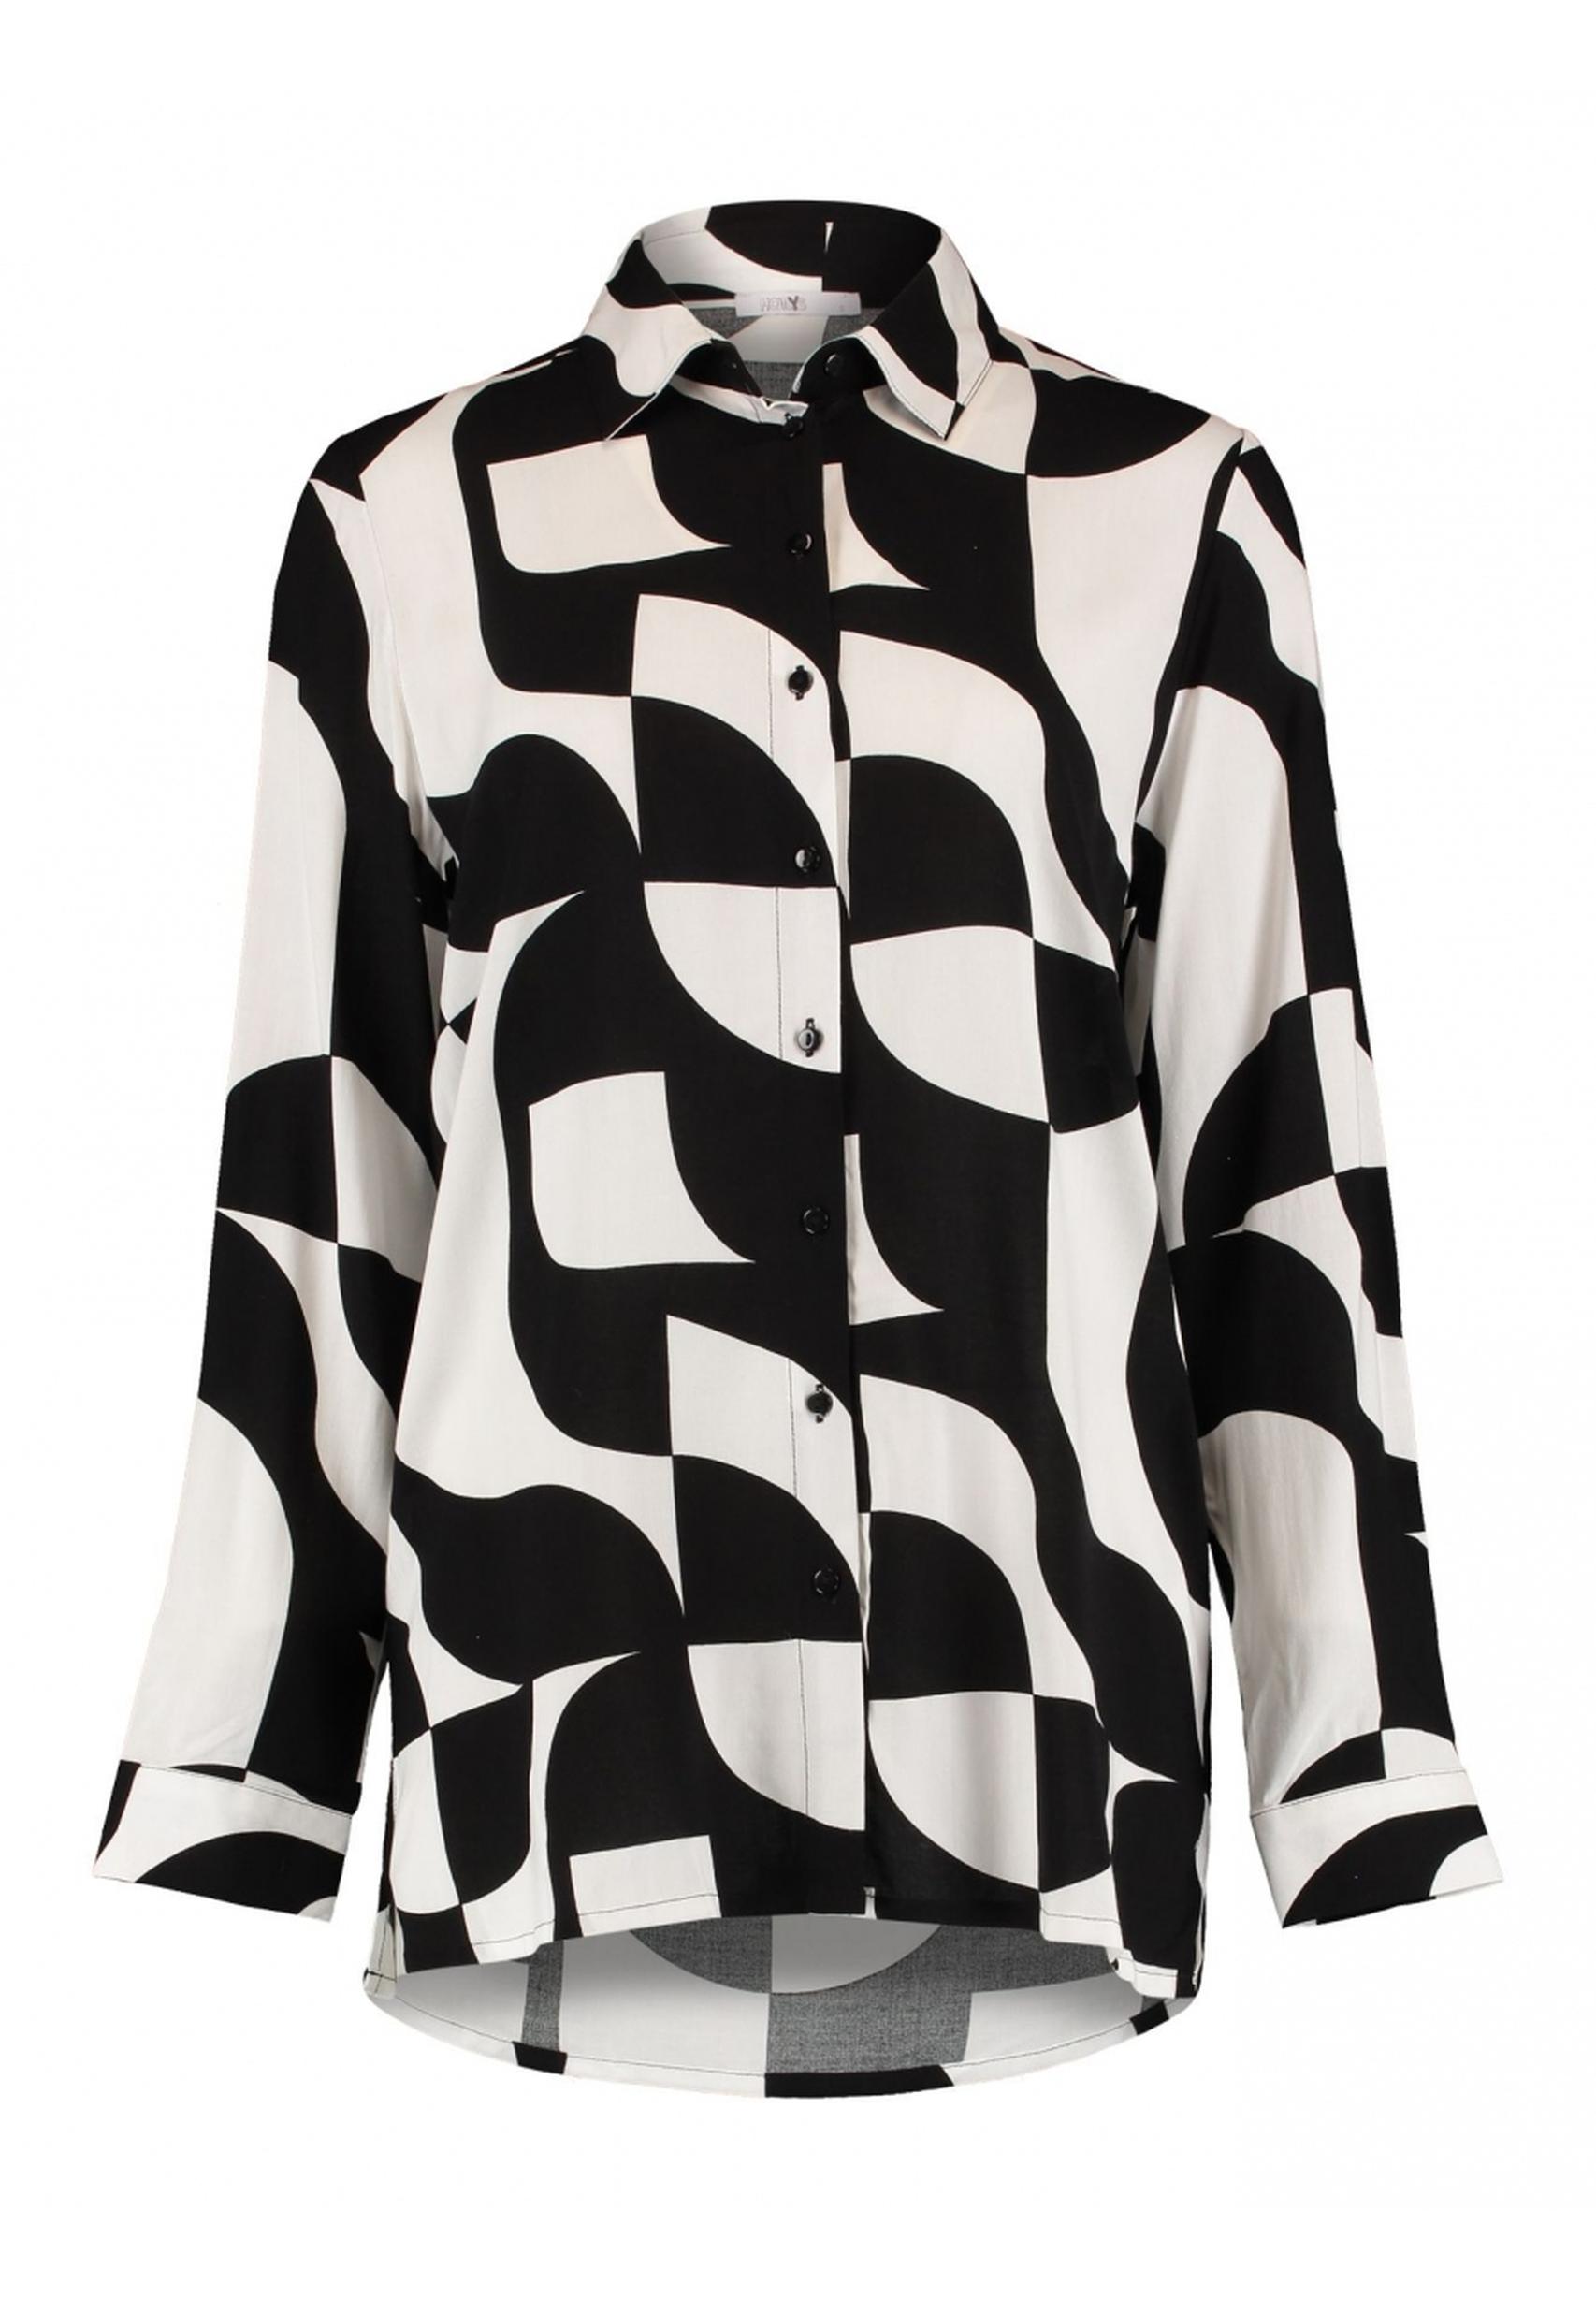 HAILYS aus Ni44na - Kollektion von schwarz-weiß Trendige Bluse in BOX-2302029 der